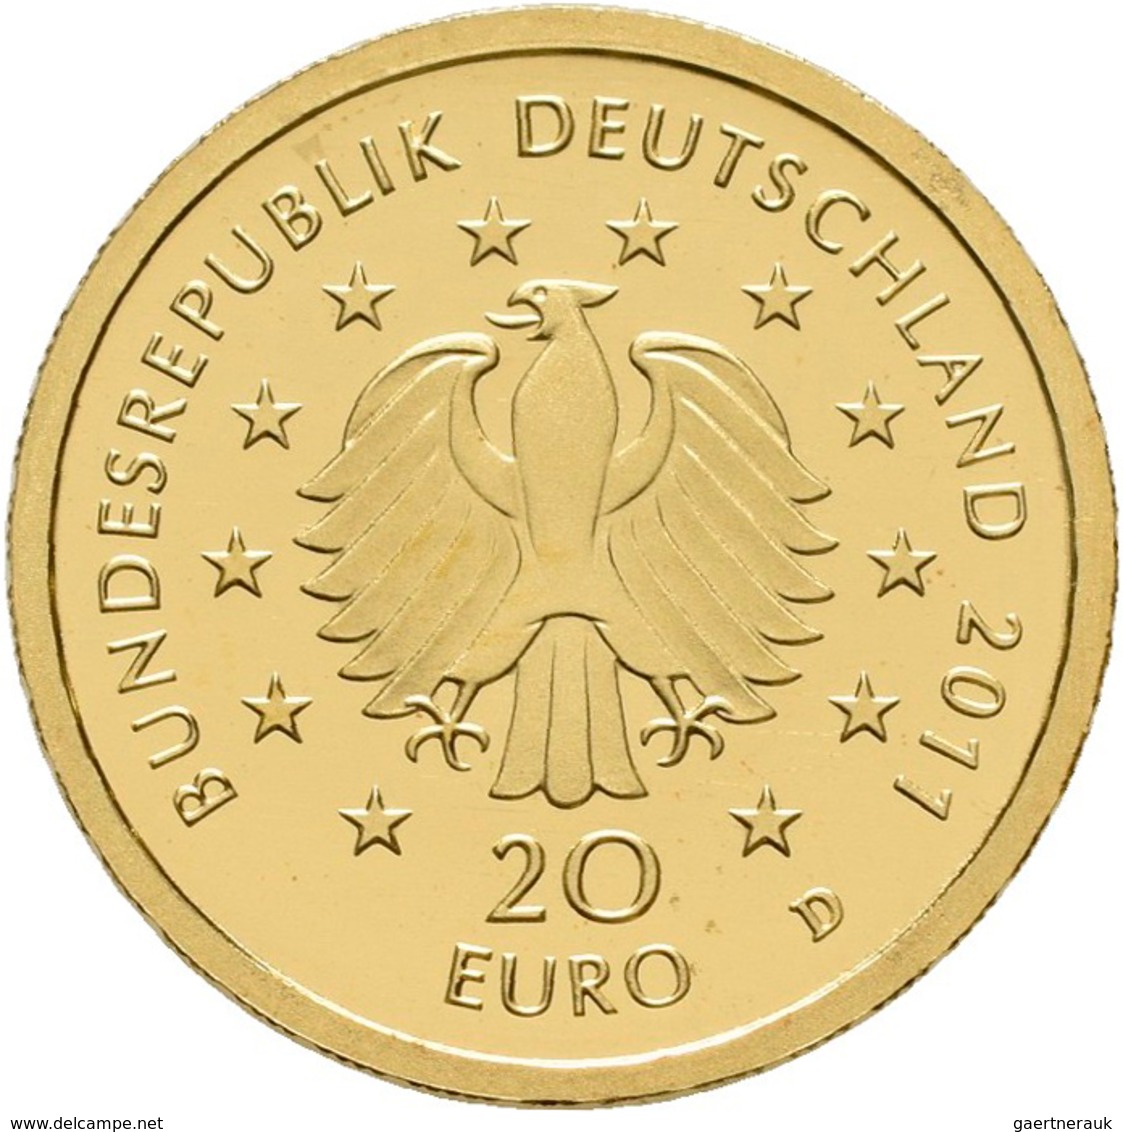 Deutschland - Anlagegold: 4 x 20 Euro 2011 Buche (D,F,F,F), Serie Deutscher Wald. In Original Kapsel